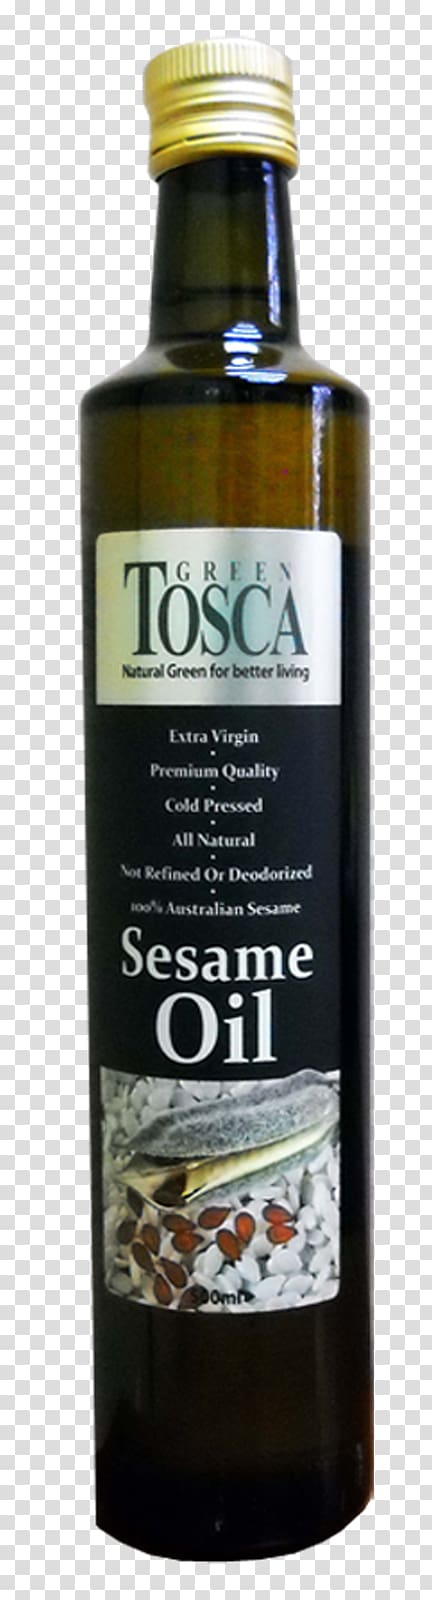 Liqueur Olive oil Sesame oil Salad dressing, sesame oil transparent background PNG clipart